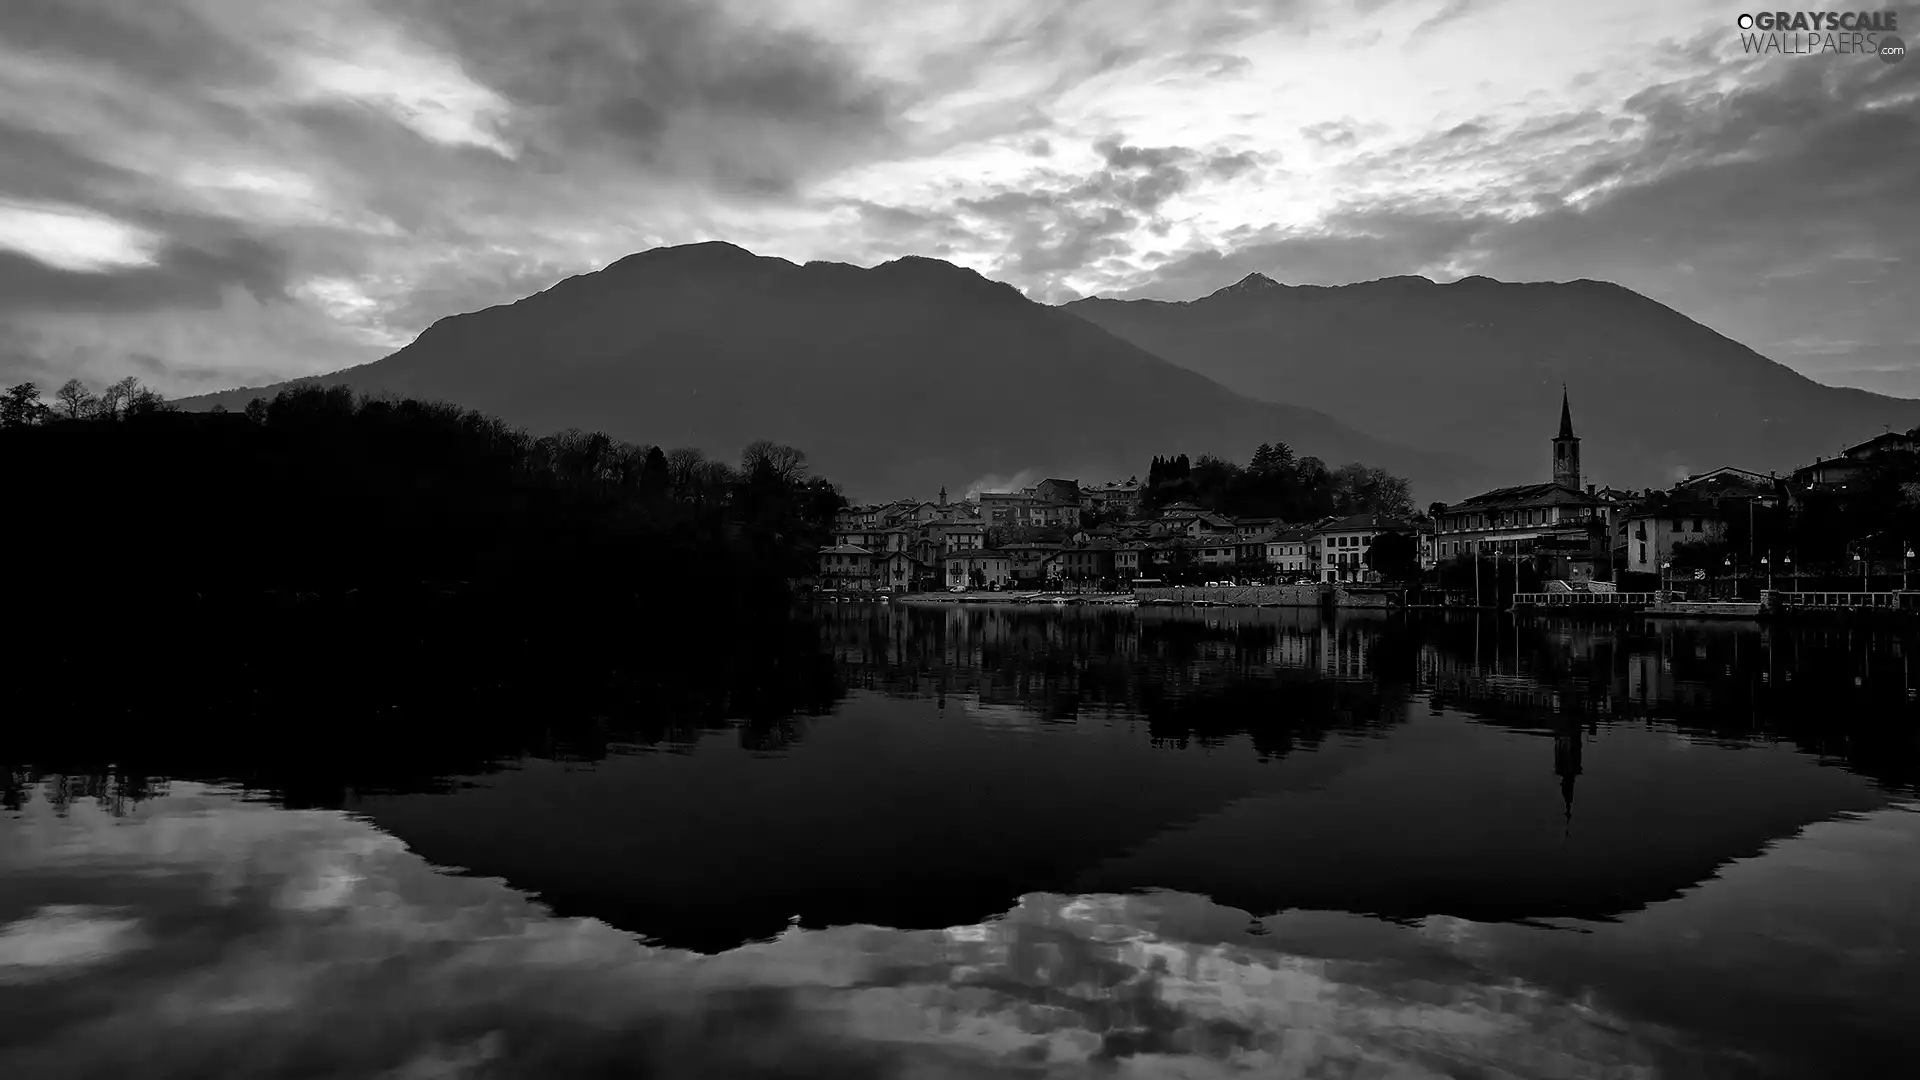 reflection, Mirror, lake, Town, Mountains